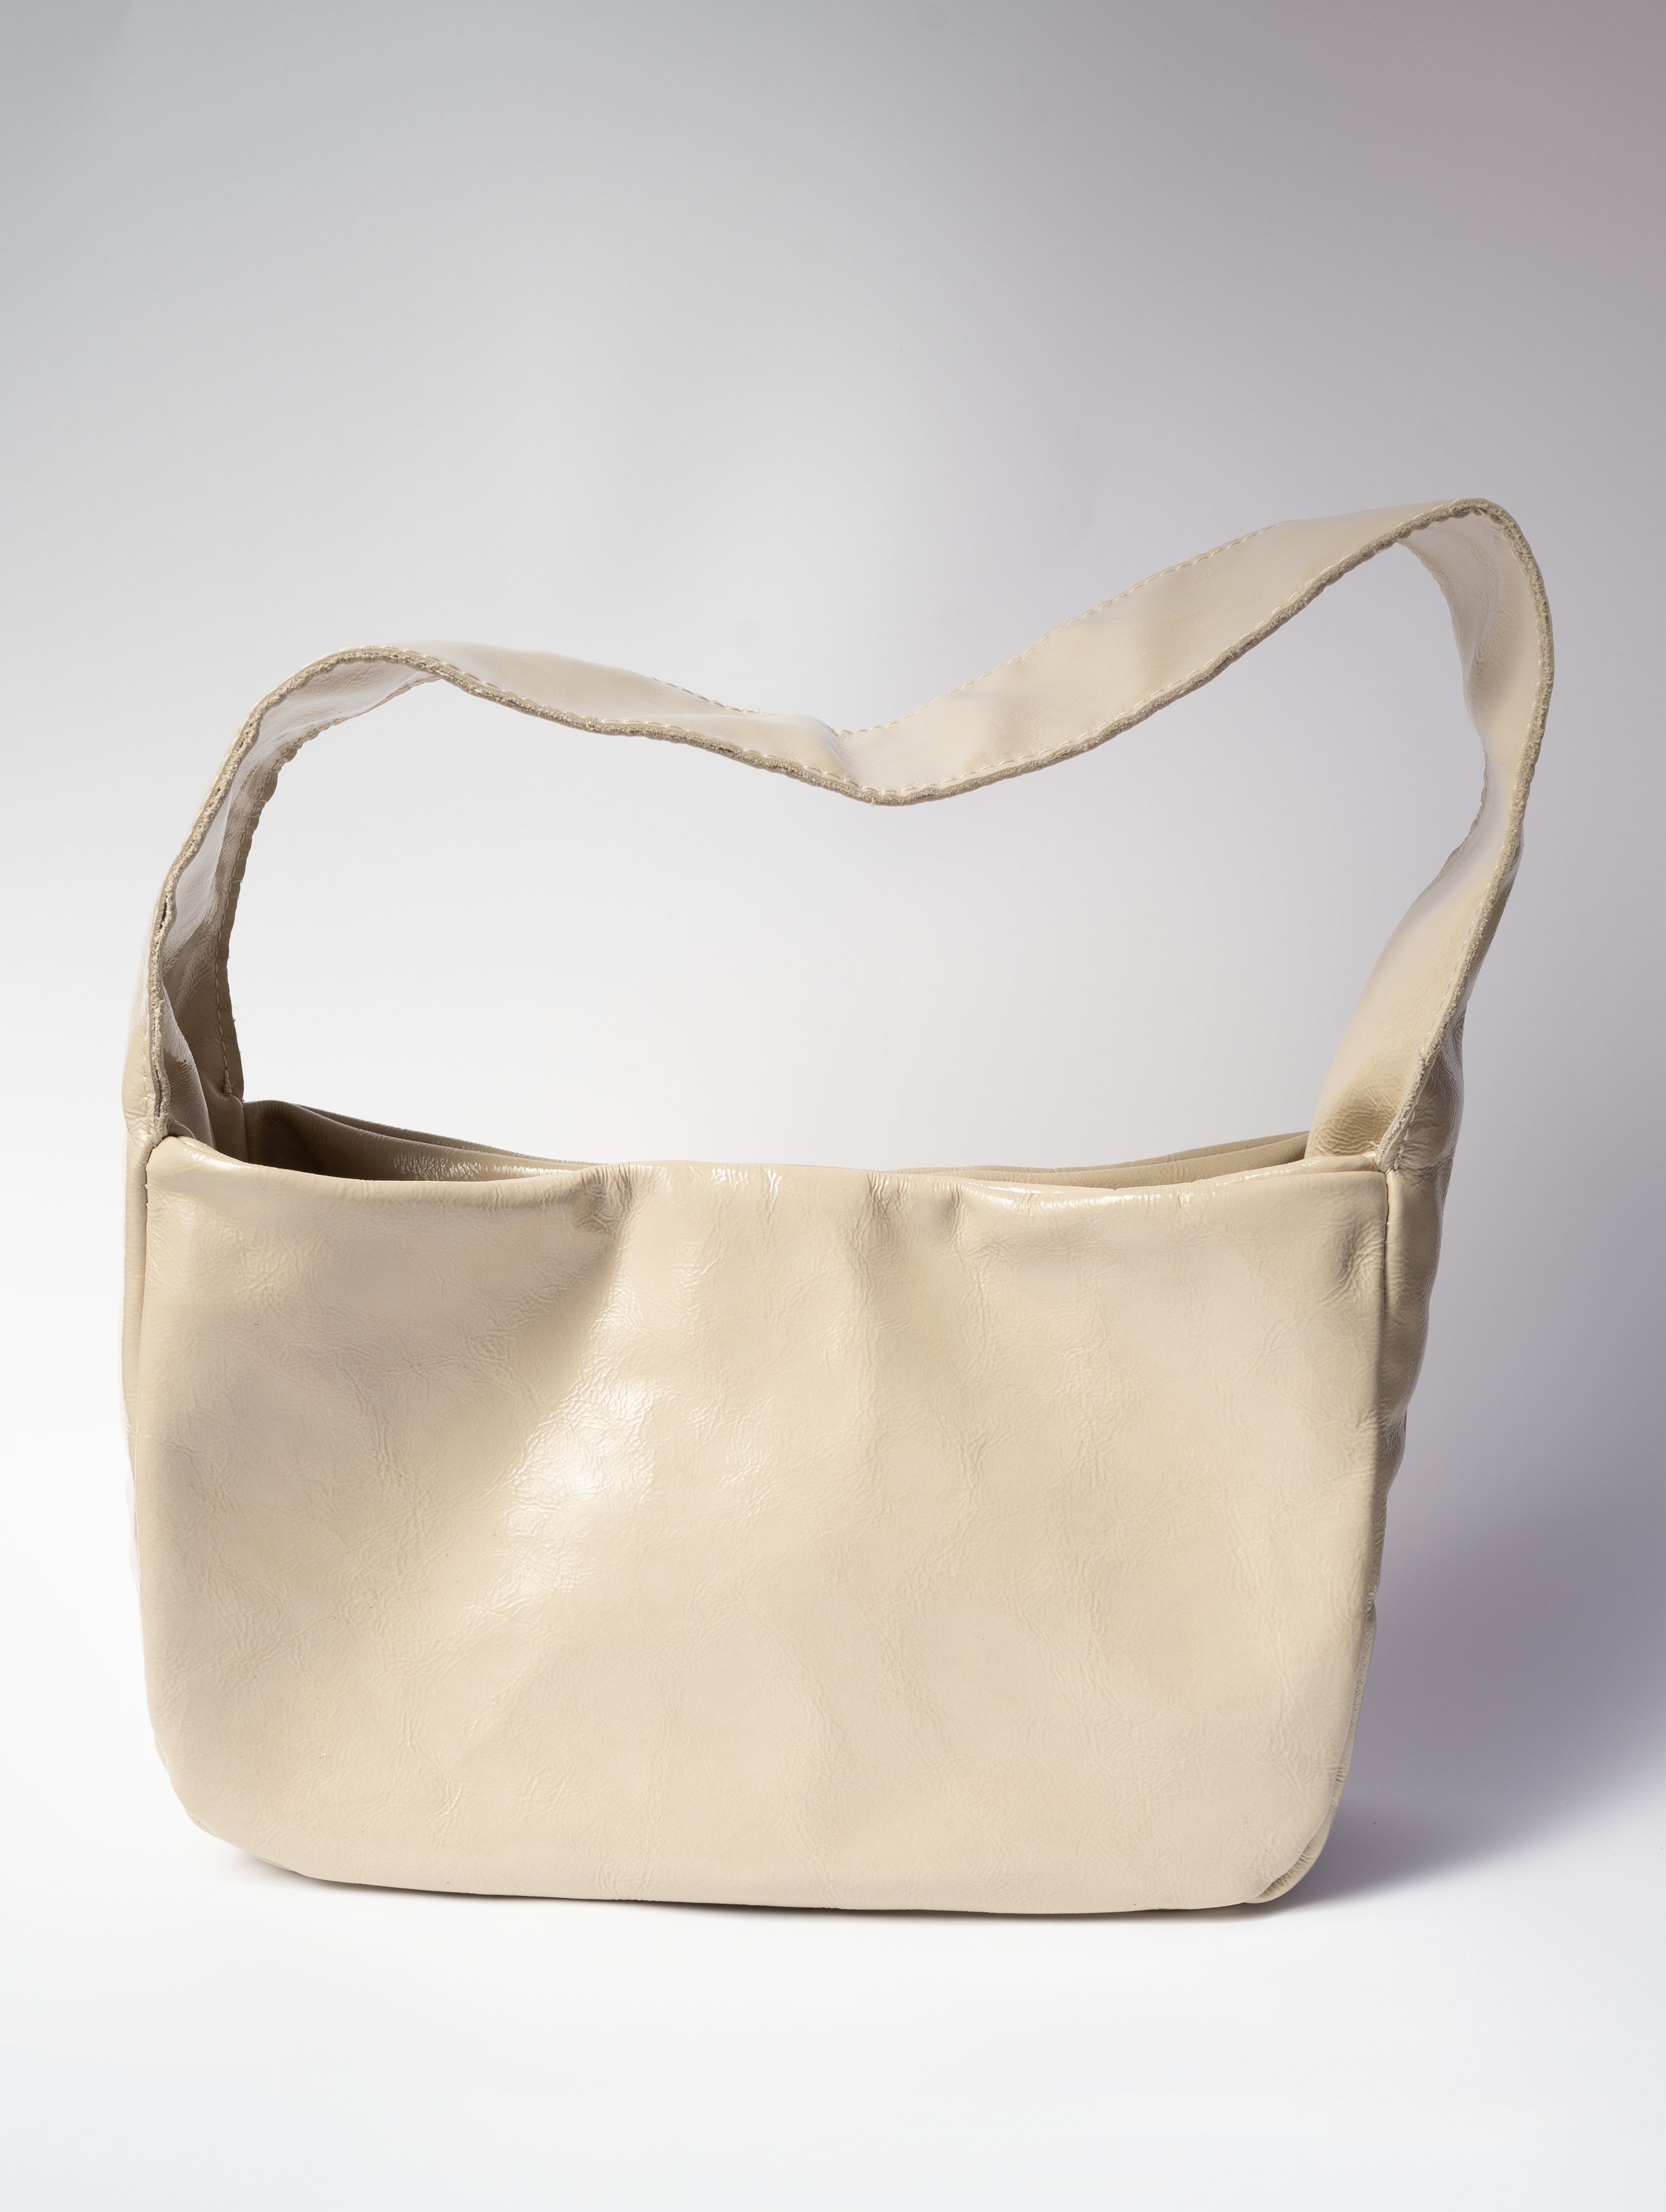 The Row | N/S Allie light beige leather bag | Savannahs